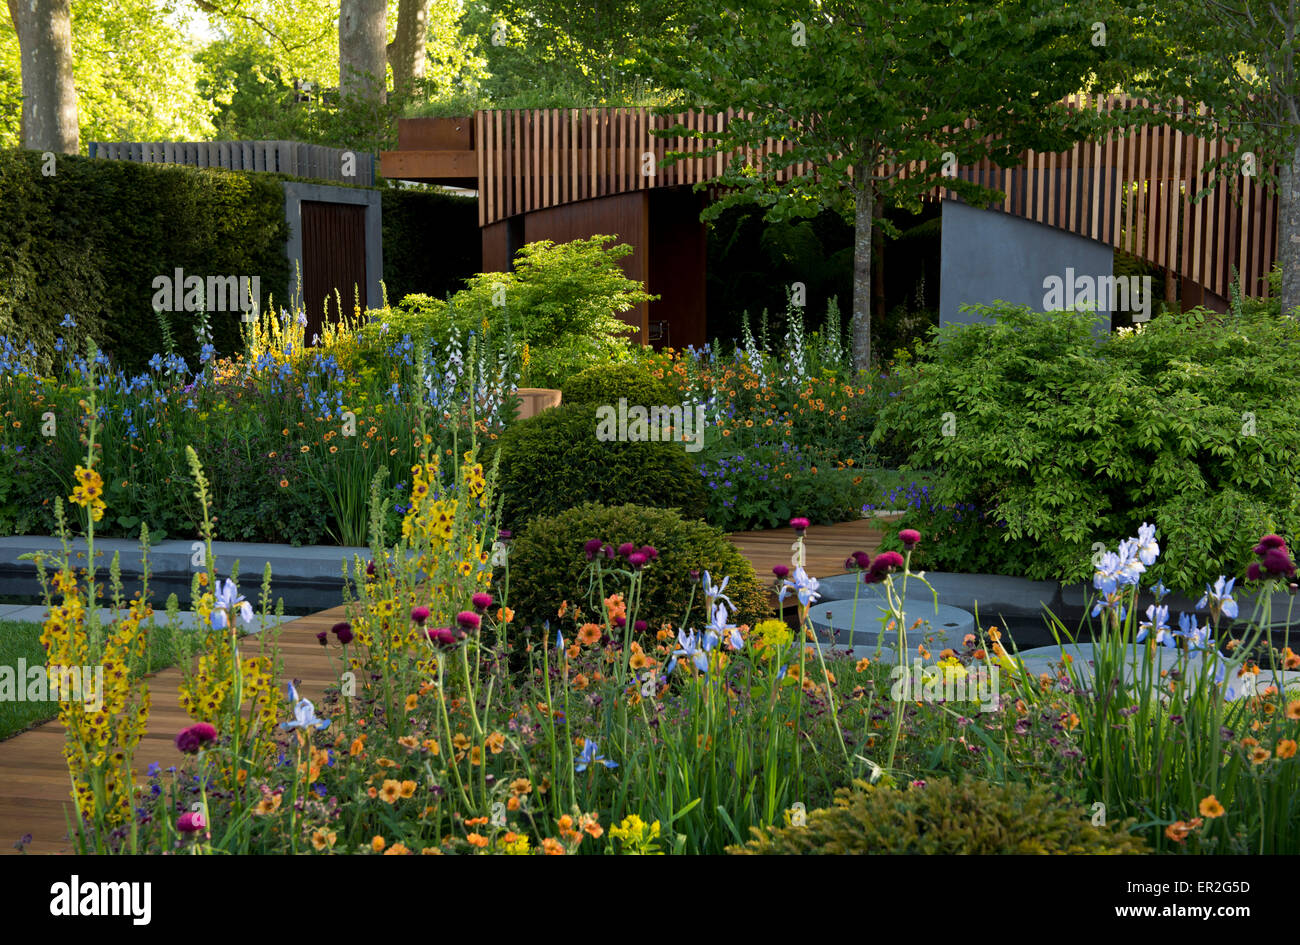 La Homebase rifugio urbano giardino disegnato da Adam Frost e vincitore di una medaglia di oro in mostra giardini categoria al Chelsea Foto Stock